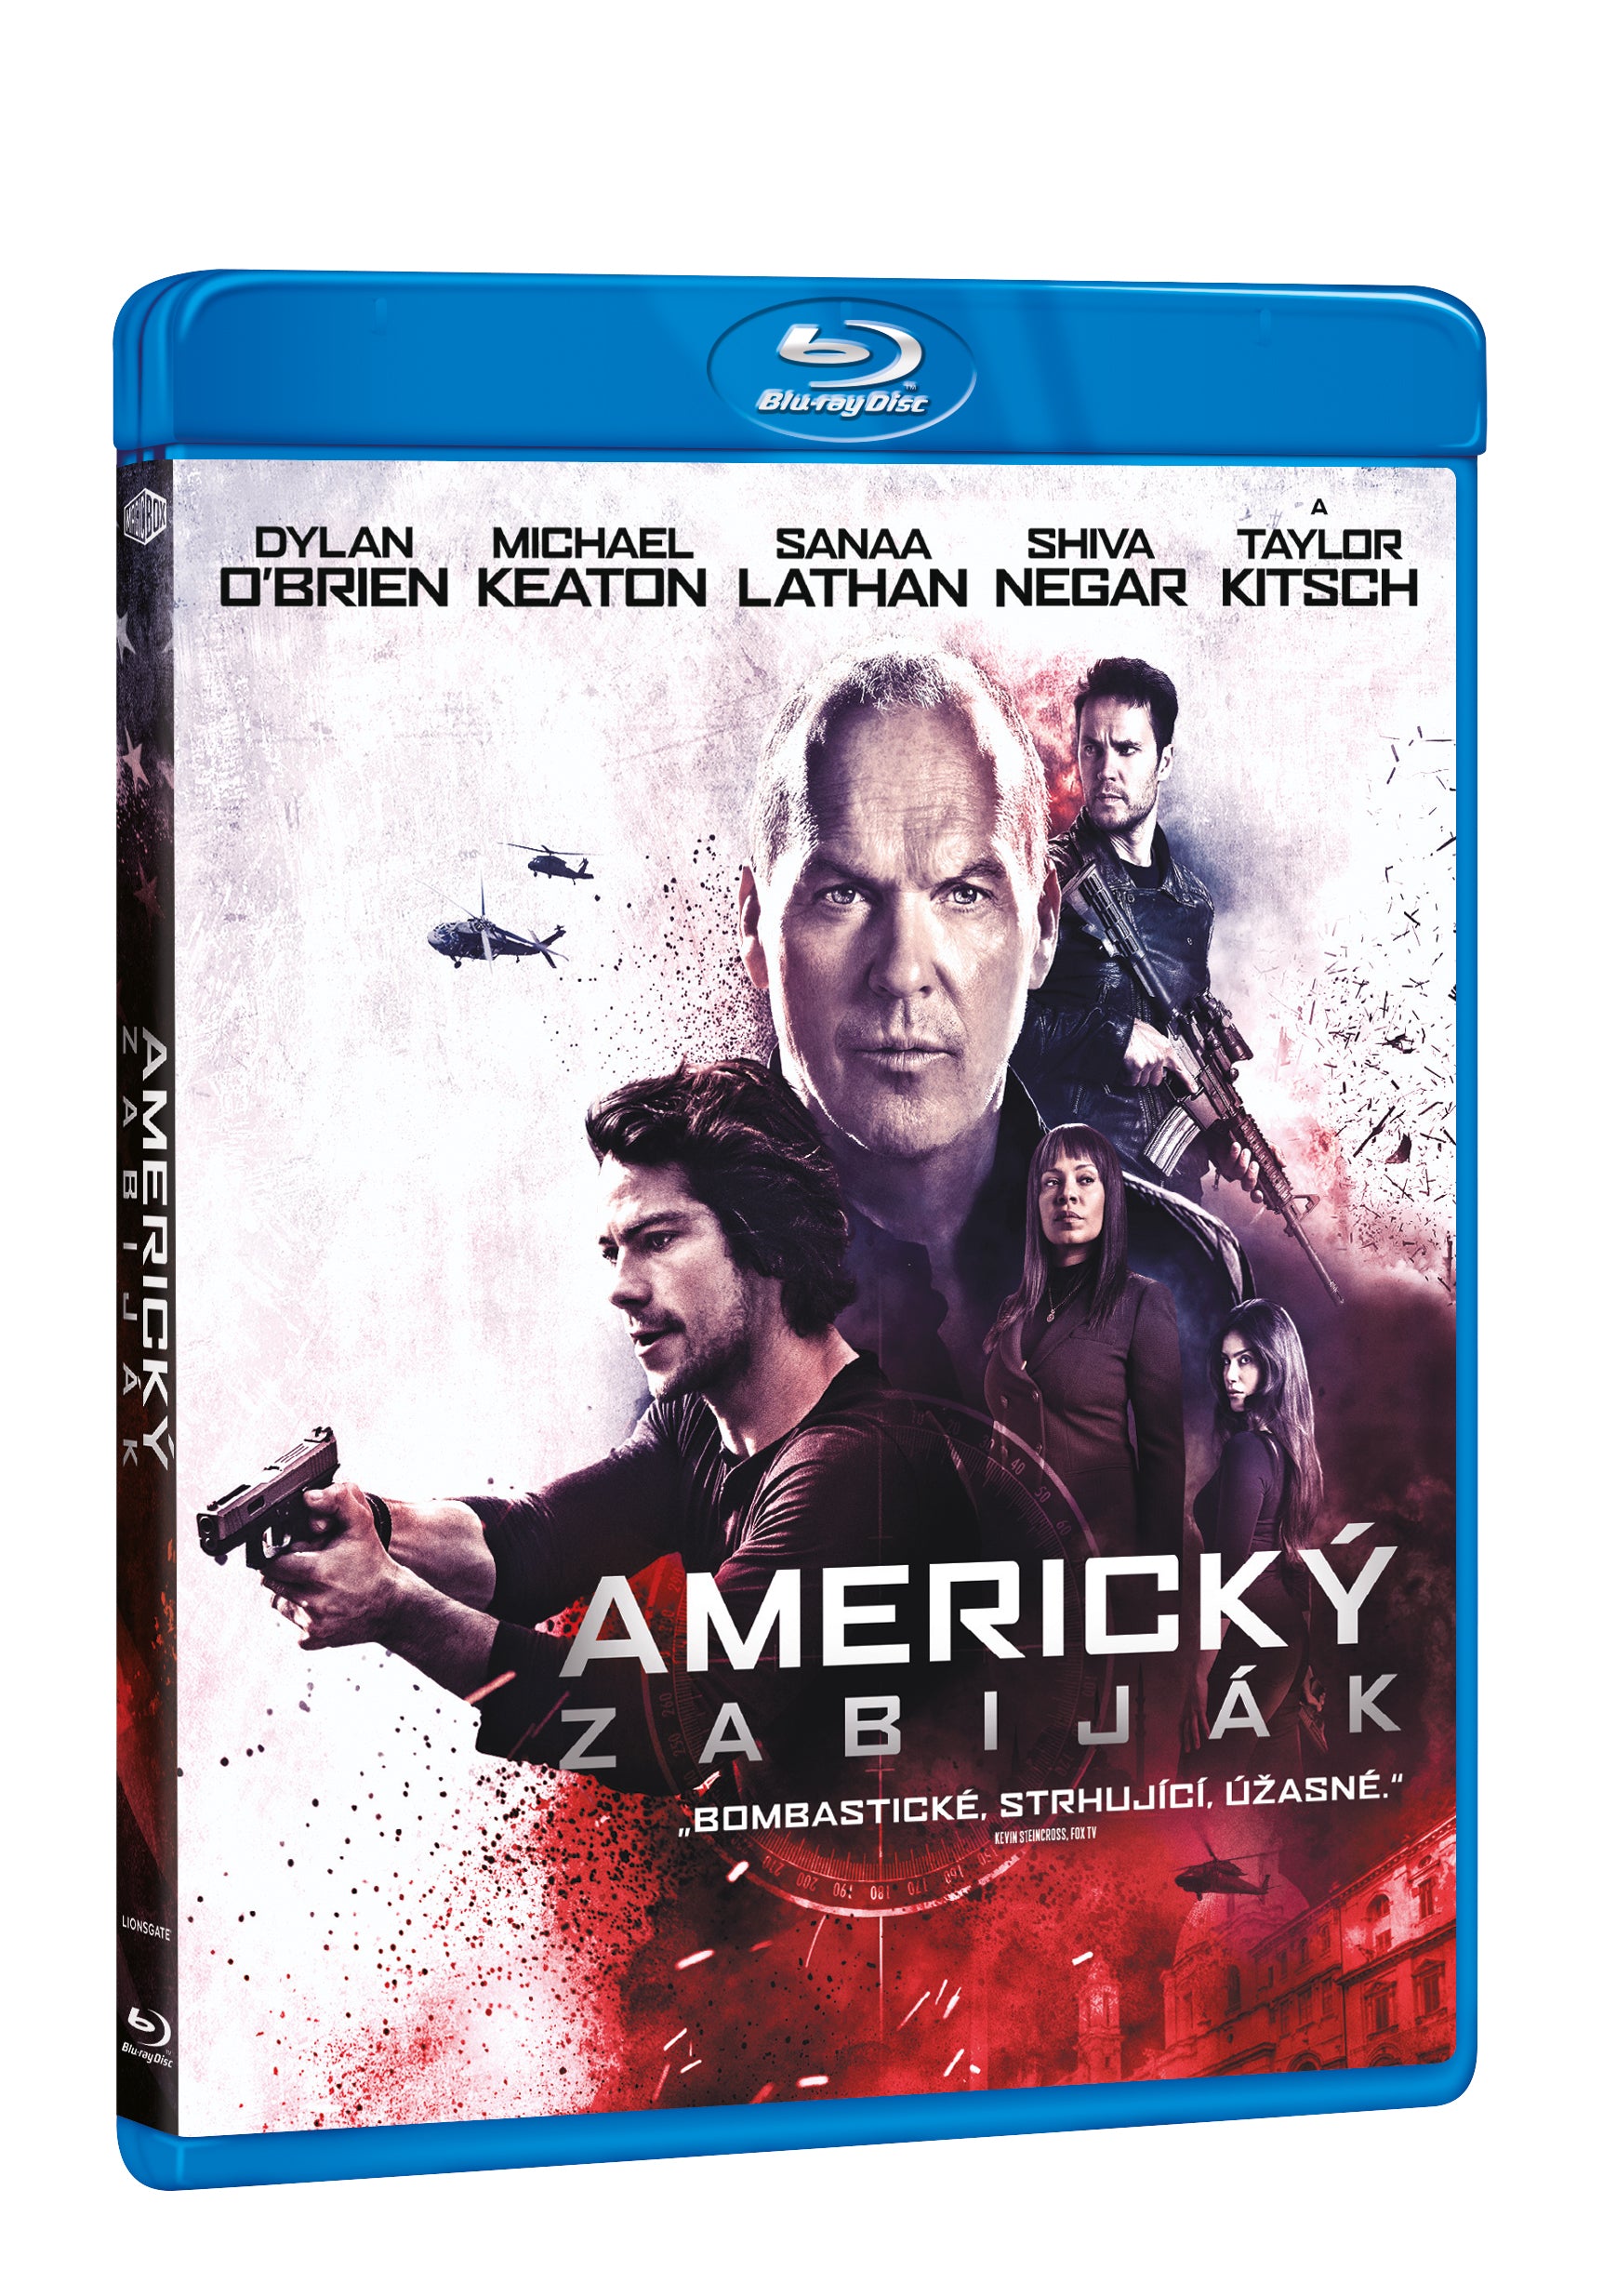 Americky zabijak BD / American Assassin - Czech version